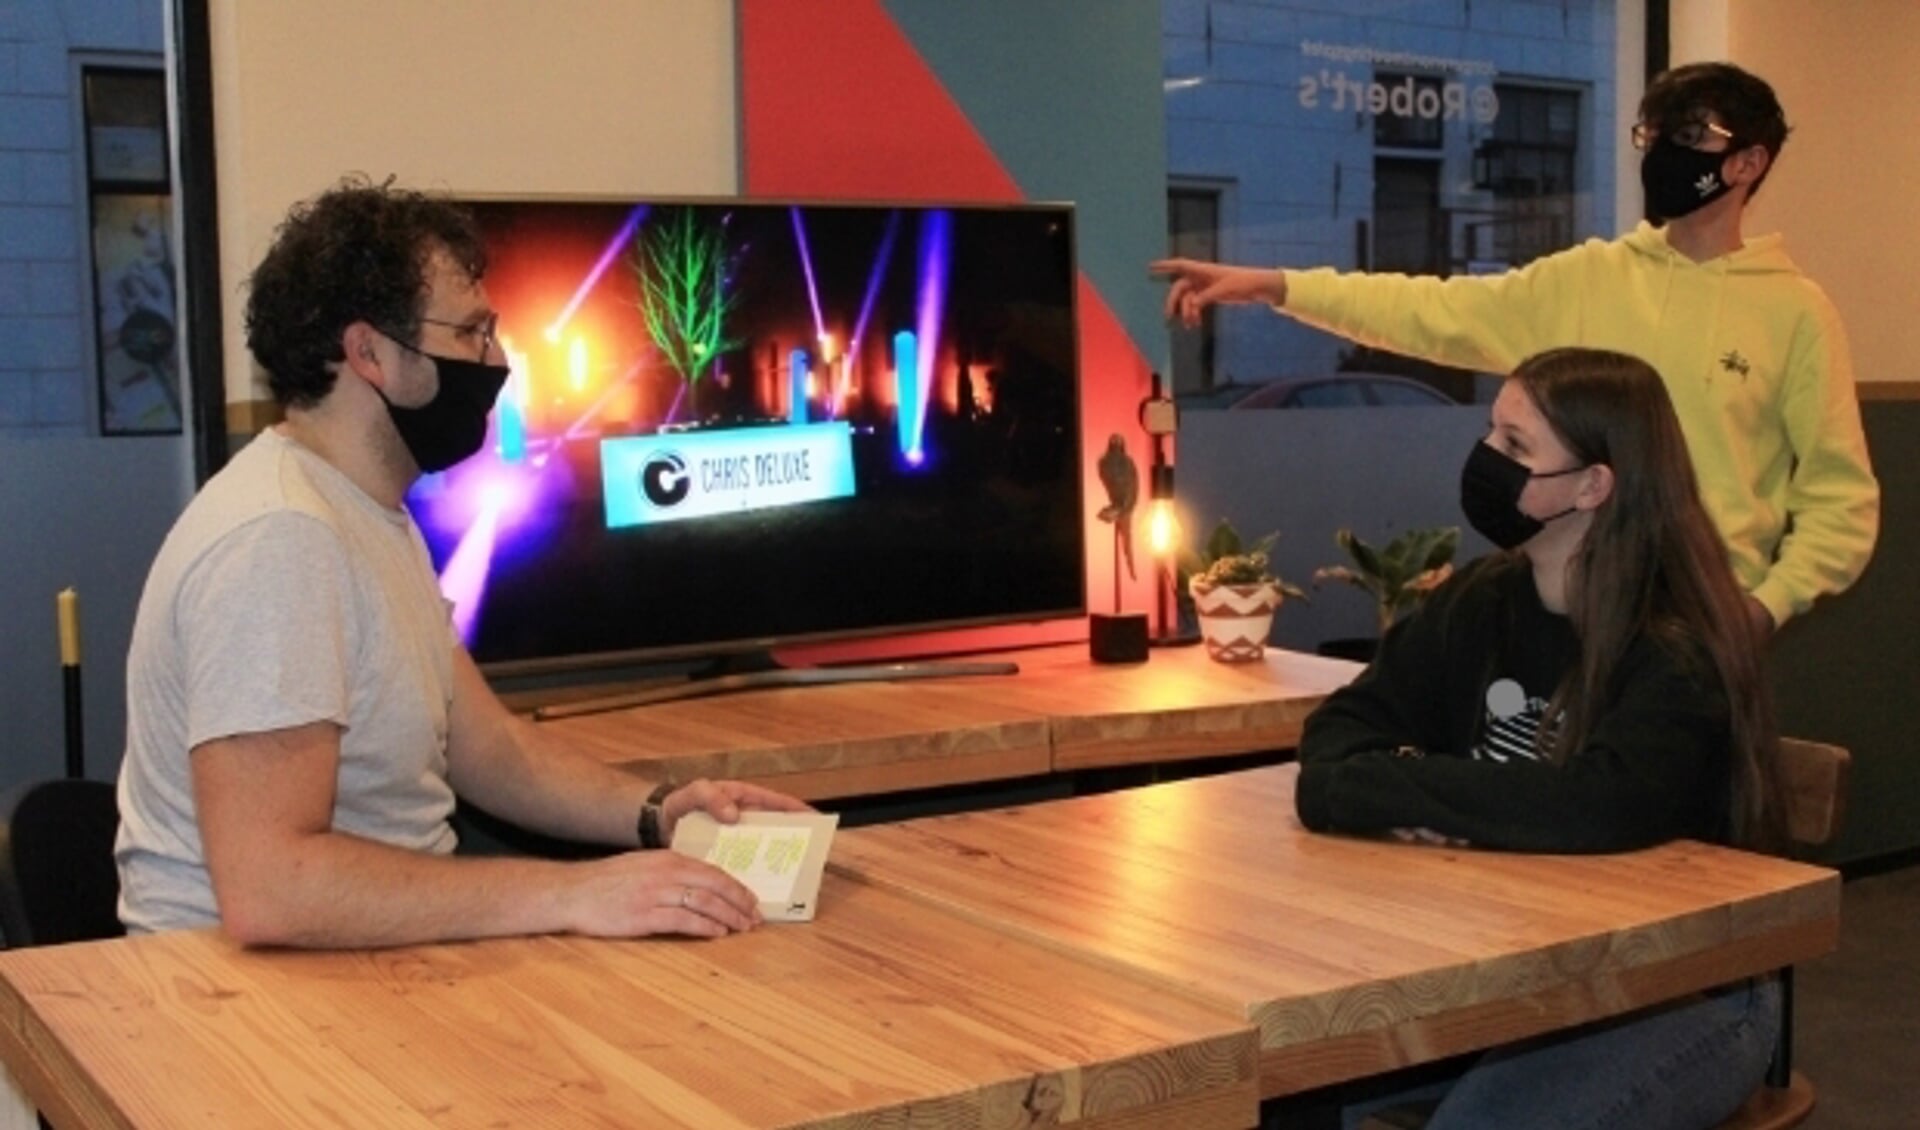 Robert Pruis met Eva Bakker en Hidde van de Streek in overleg over de tv-uitzending tijdens Oud & Nieuw.